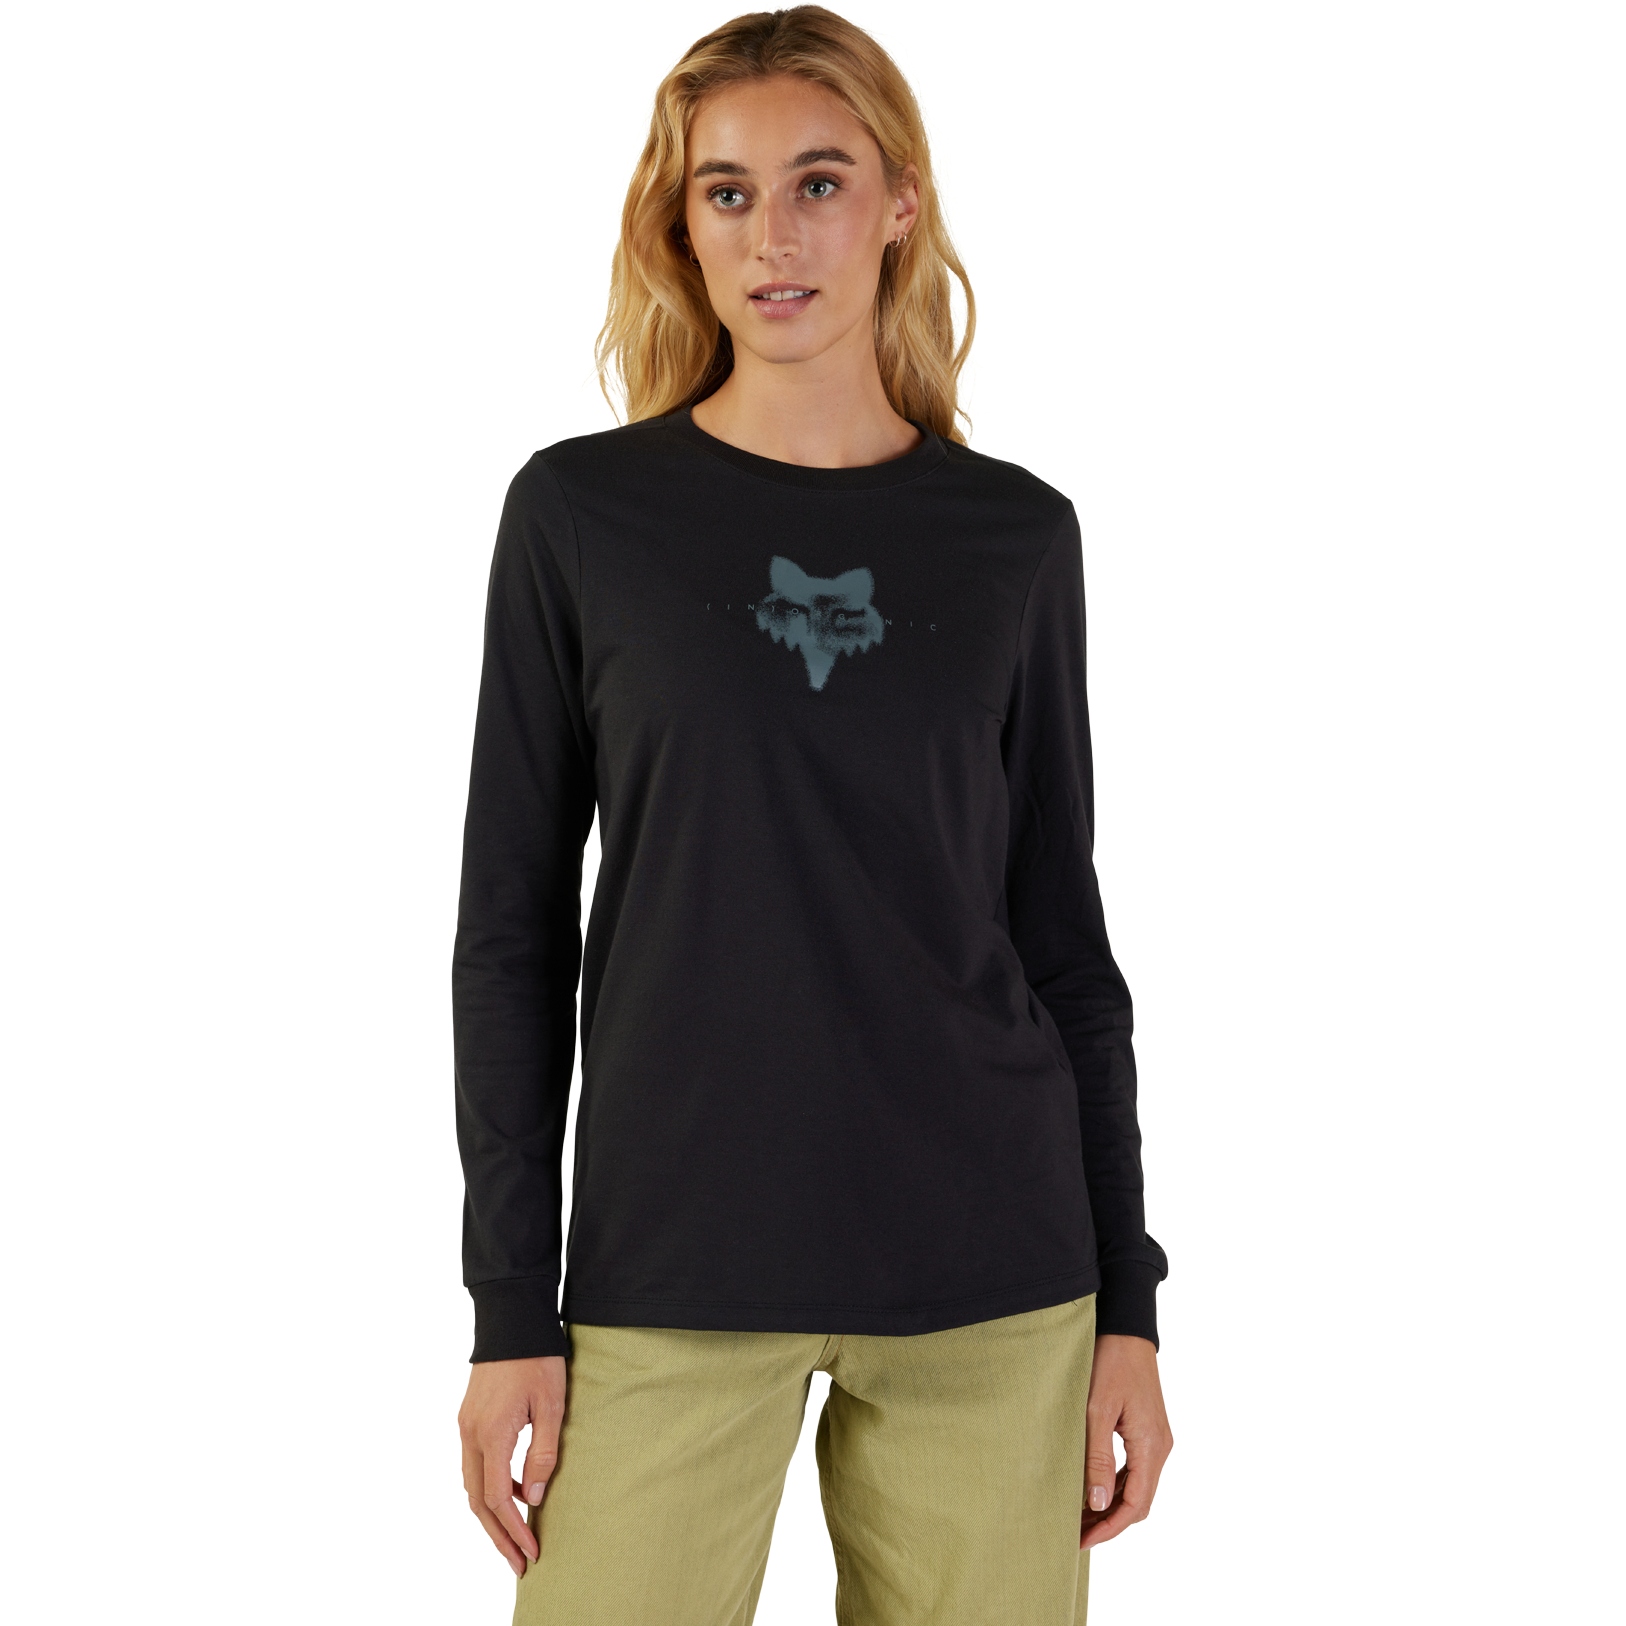 Produktbild von FOX Inorganic Langarmshirt Damen - schwarz